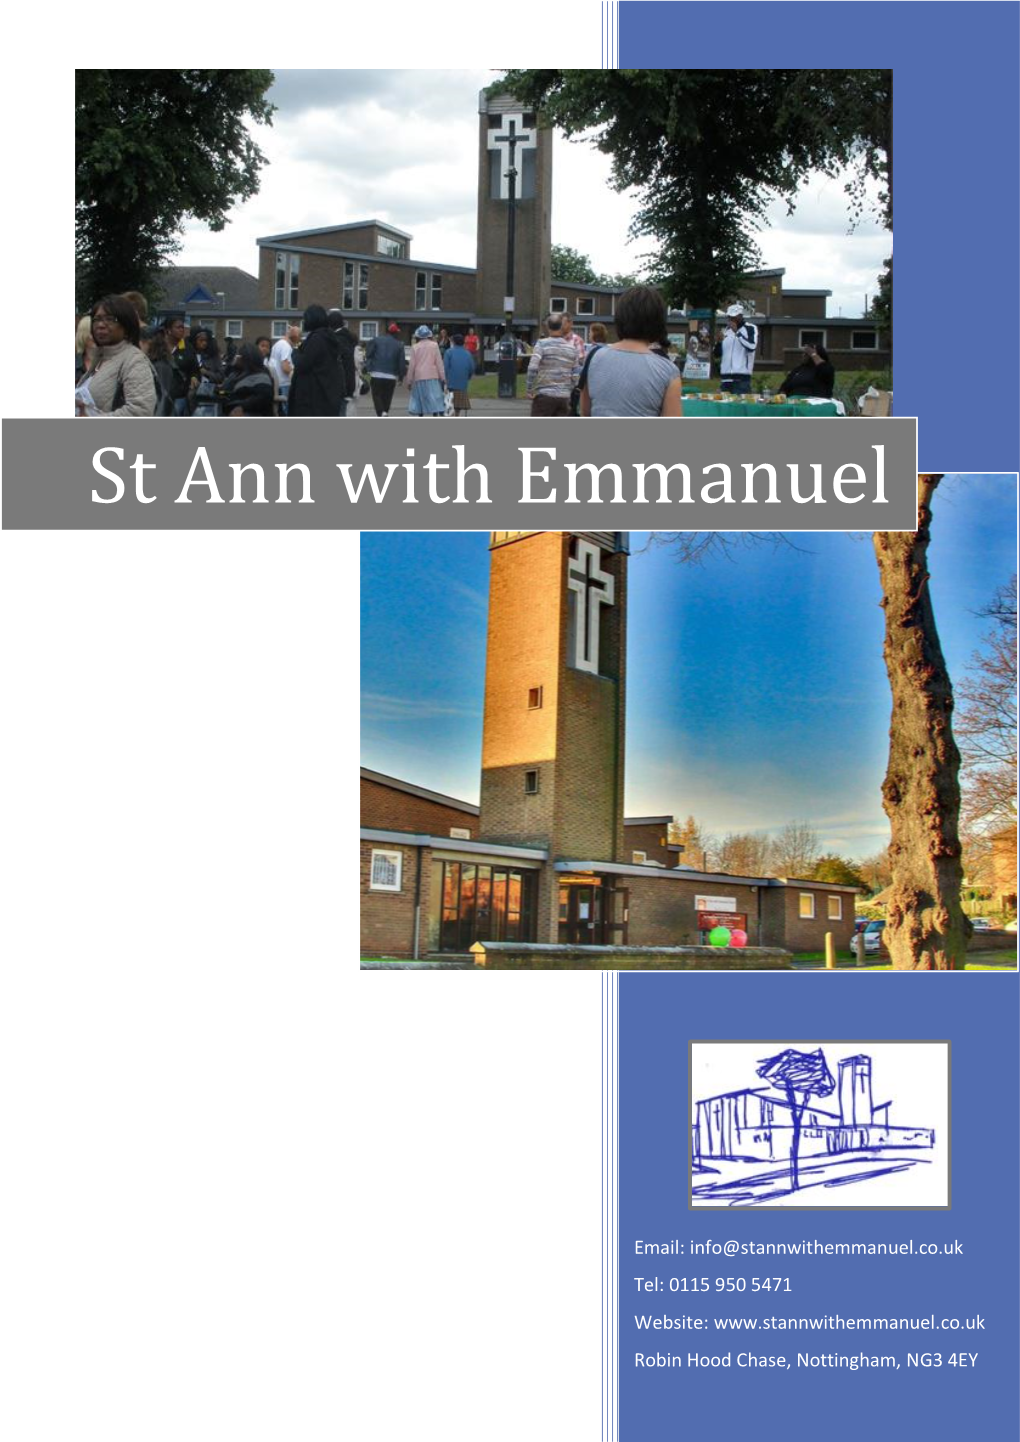 St Ann with Emmanuel Church